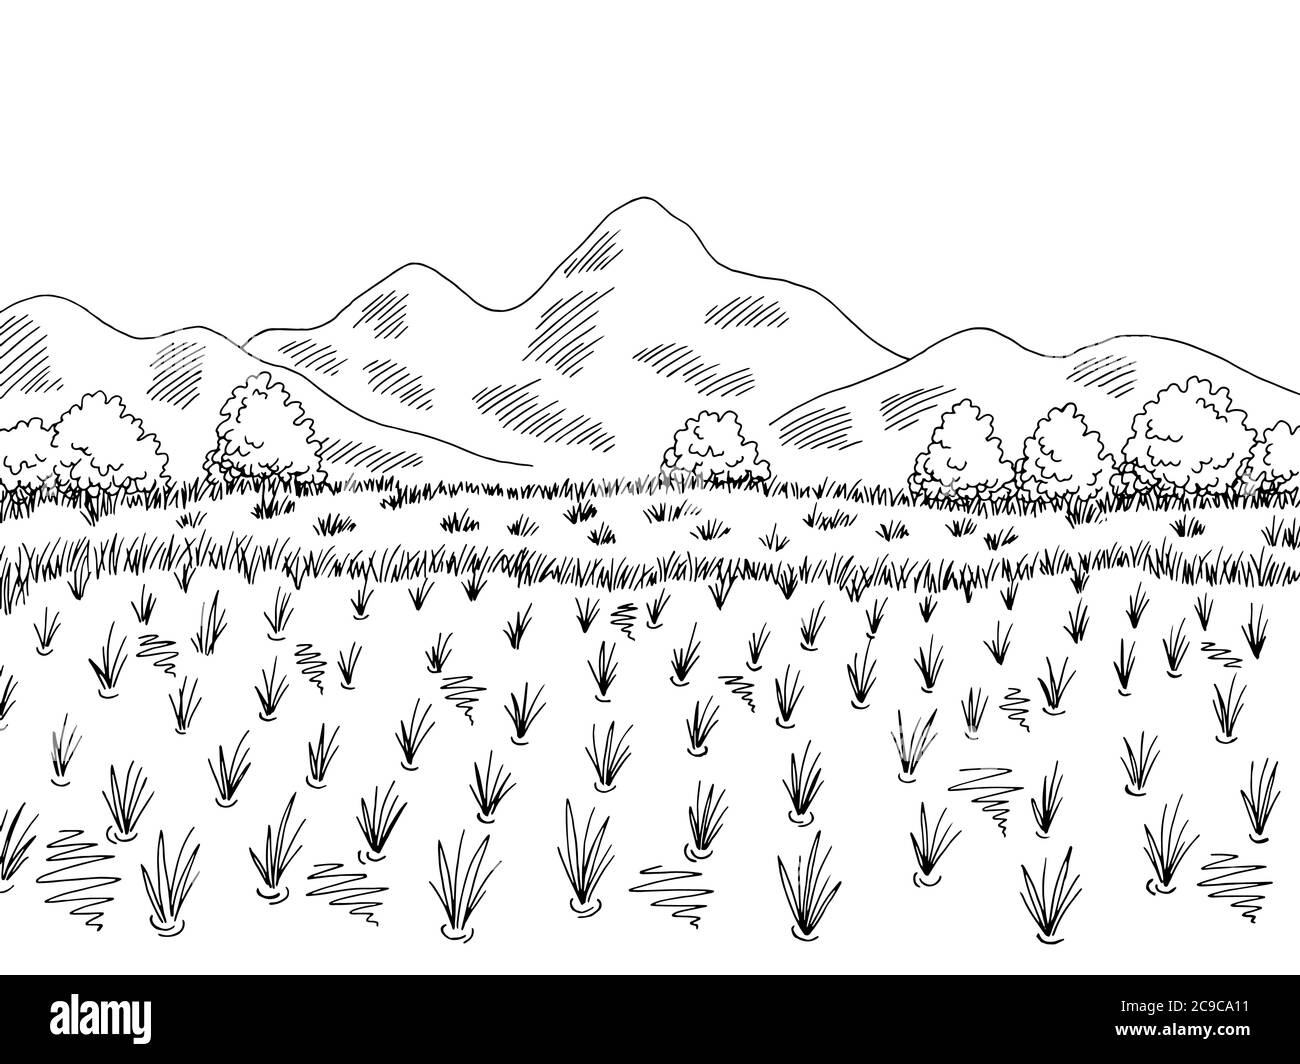 Motif champ de riz noir blanc paysage dessin illustration vecteur Illustration de Vecteur